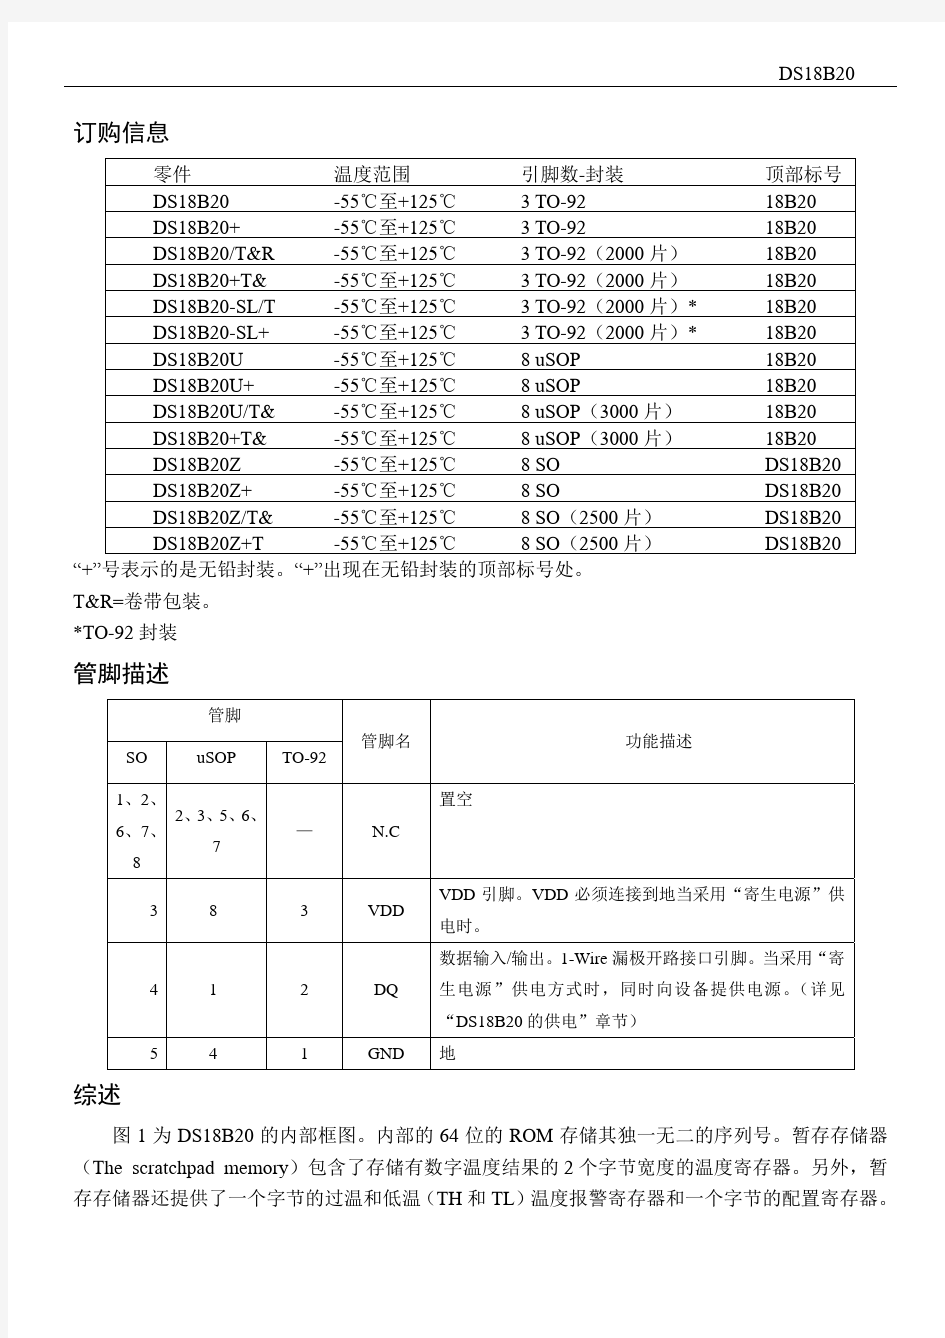 DS18B20数据手册-中文版-140407